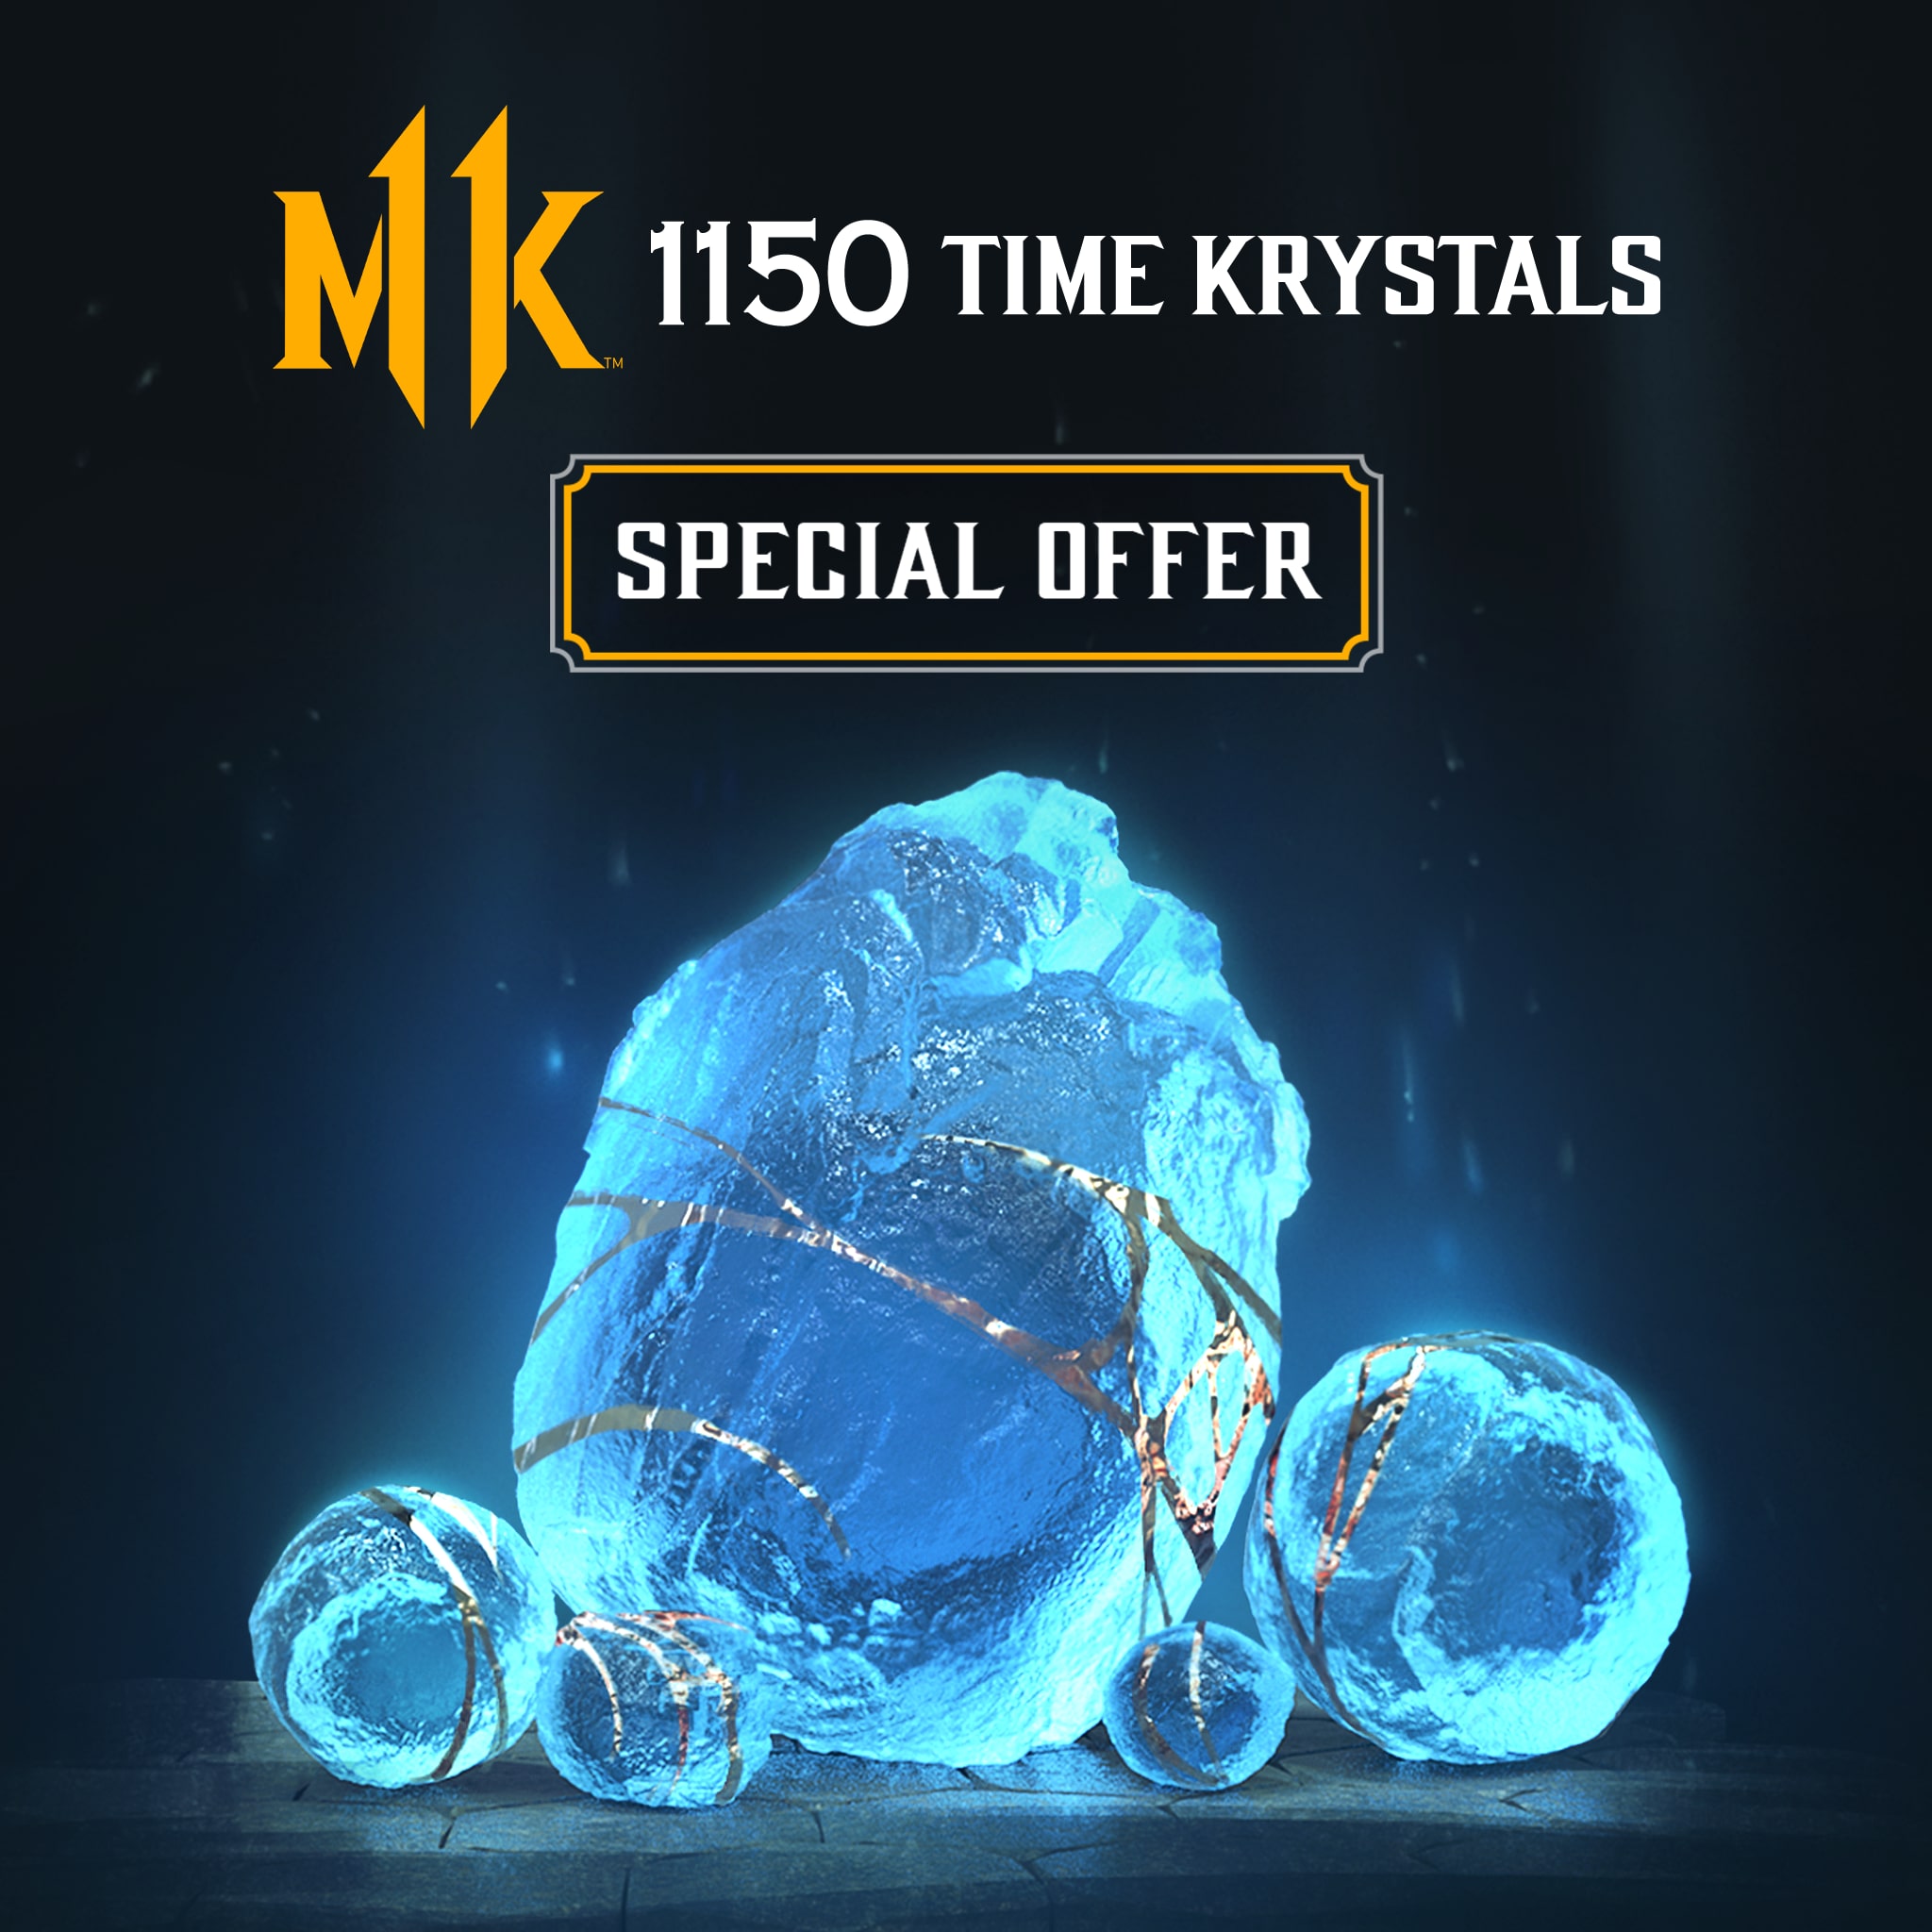 1 150 Kristaux de Temps - Offre spéciale unique